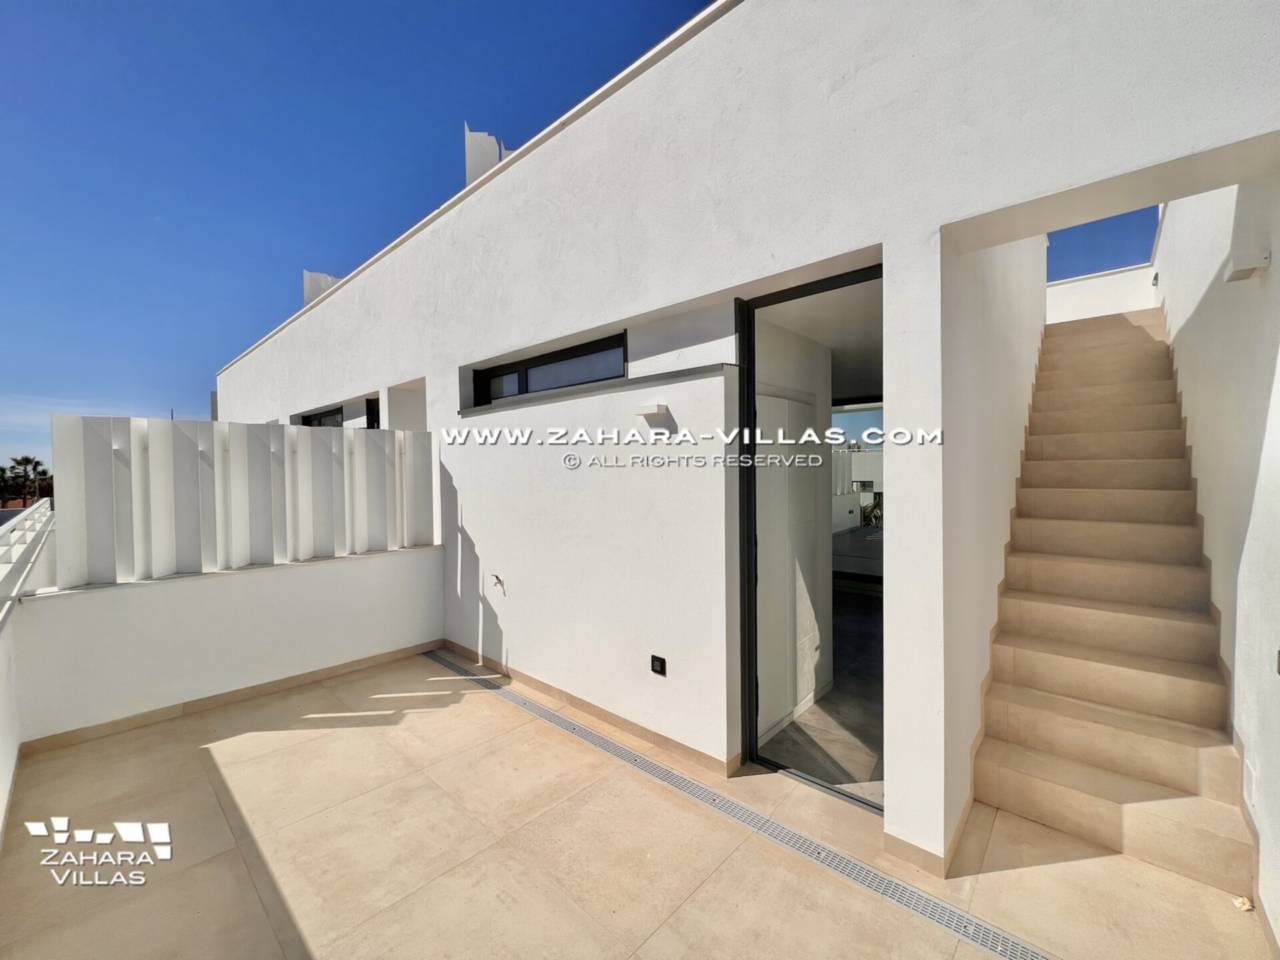 Imagen 40 de Promoción obra nueva terminada "EL OASIS DE ZAHARA" viviendas adosadas junto al mar